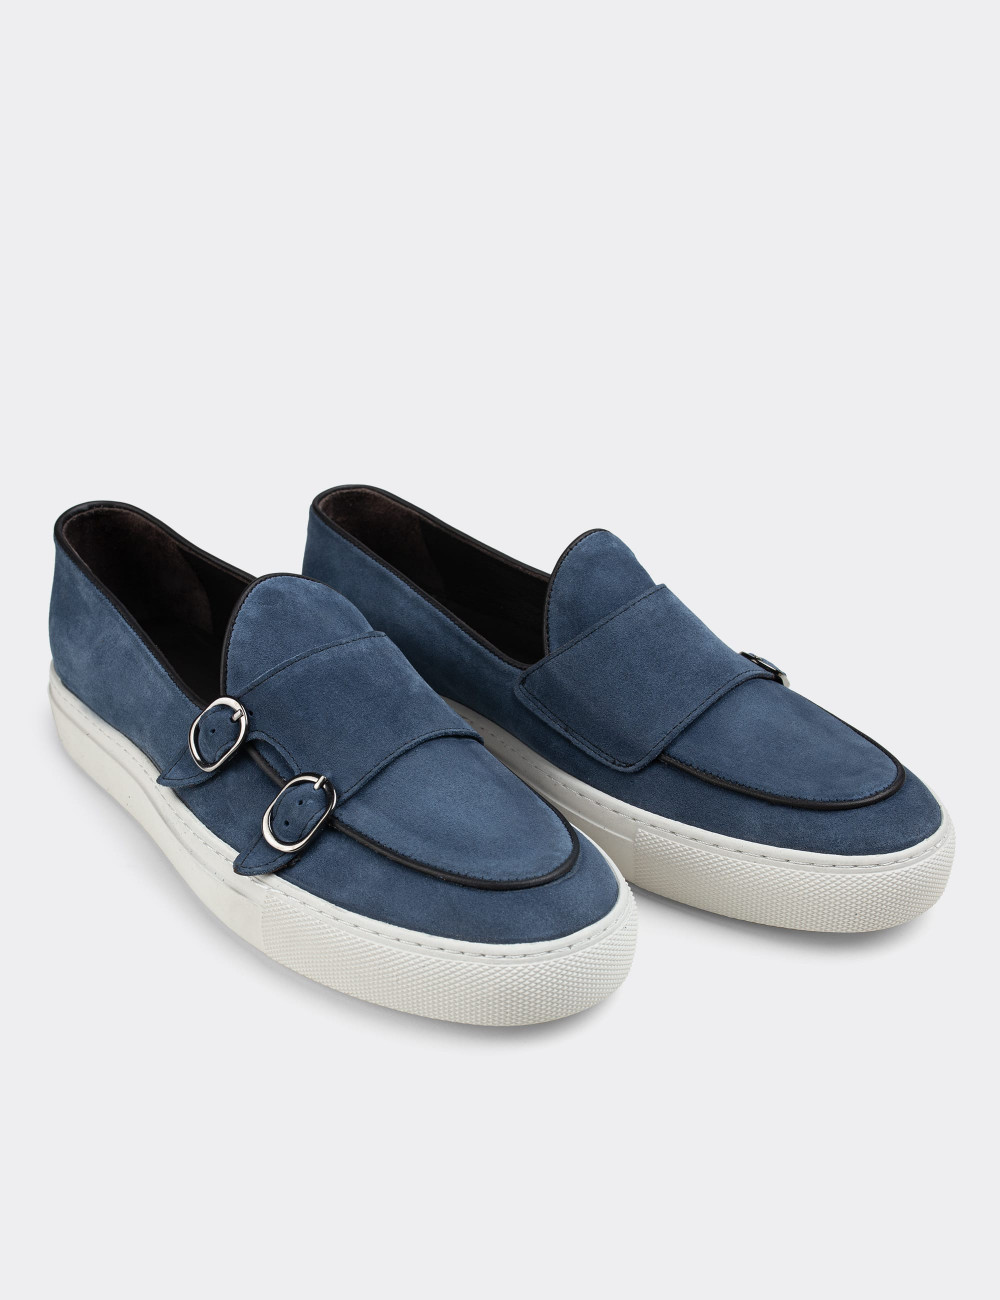 Hakiki Süet Mavi Sneaker Çift Tokalı Erkek Ayakkabı - 01846MMVIC01